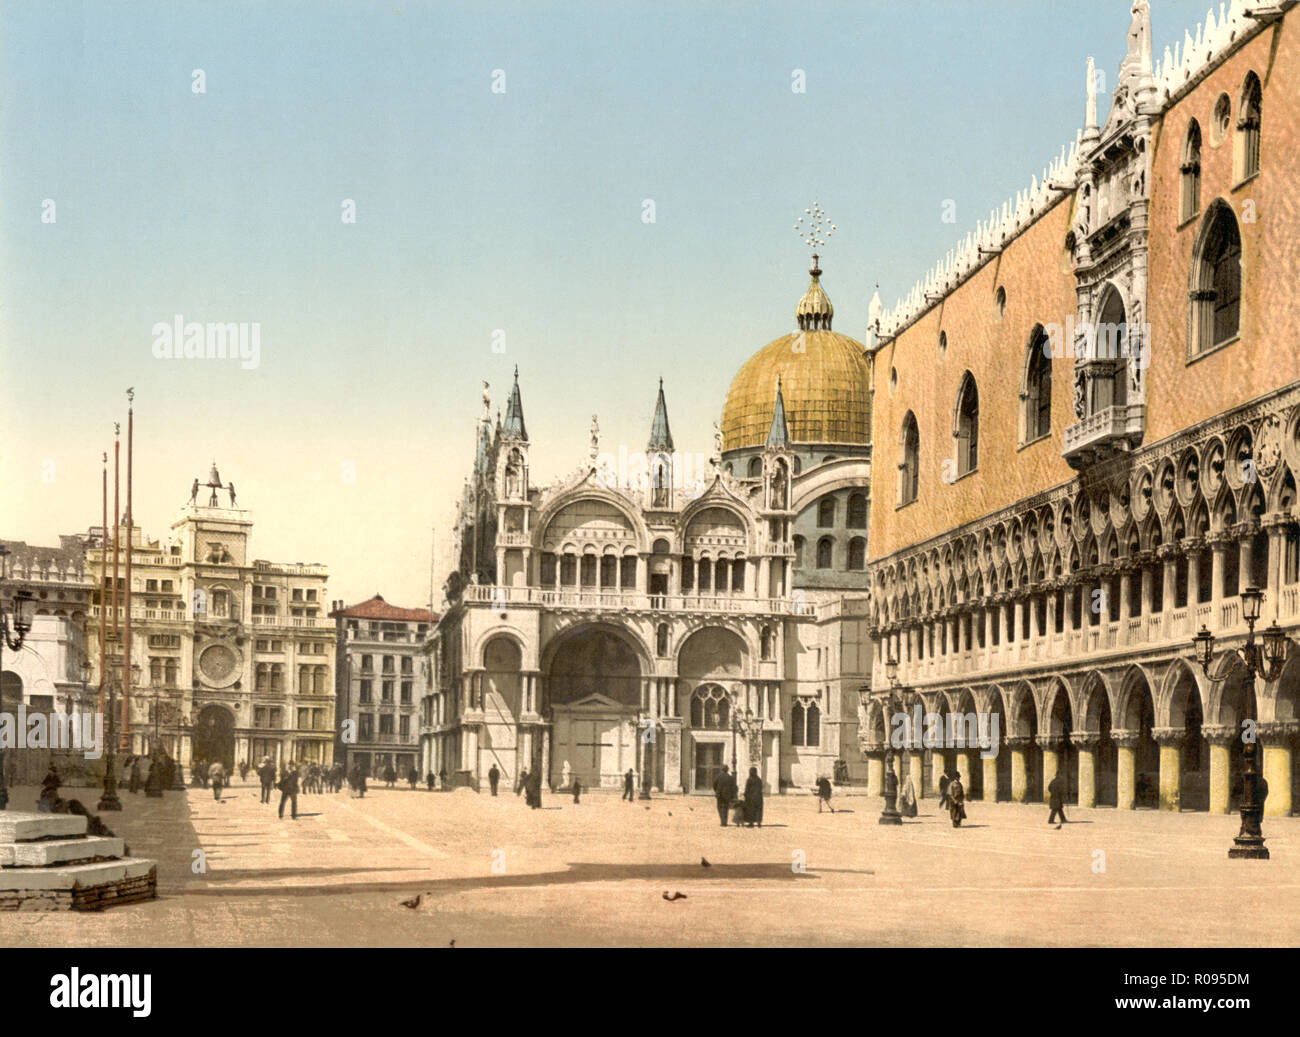 Tour de l'horloge, la, et palais des Doges, la Piazzetta di San Marco, Venise, Italie, impression Photochrome, Detroit Publishing Company, 1900 Banque D'Images